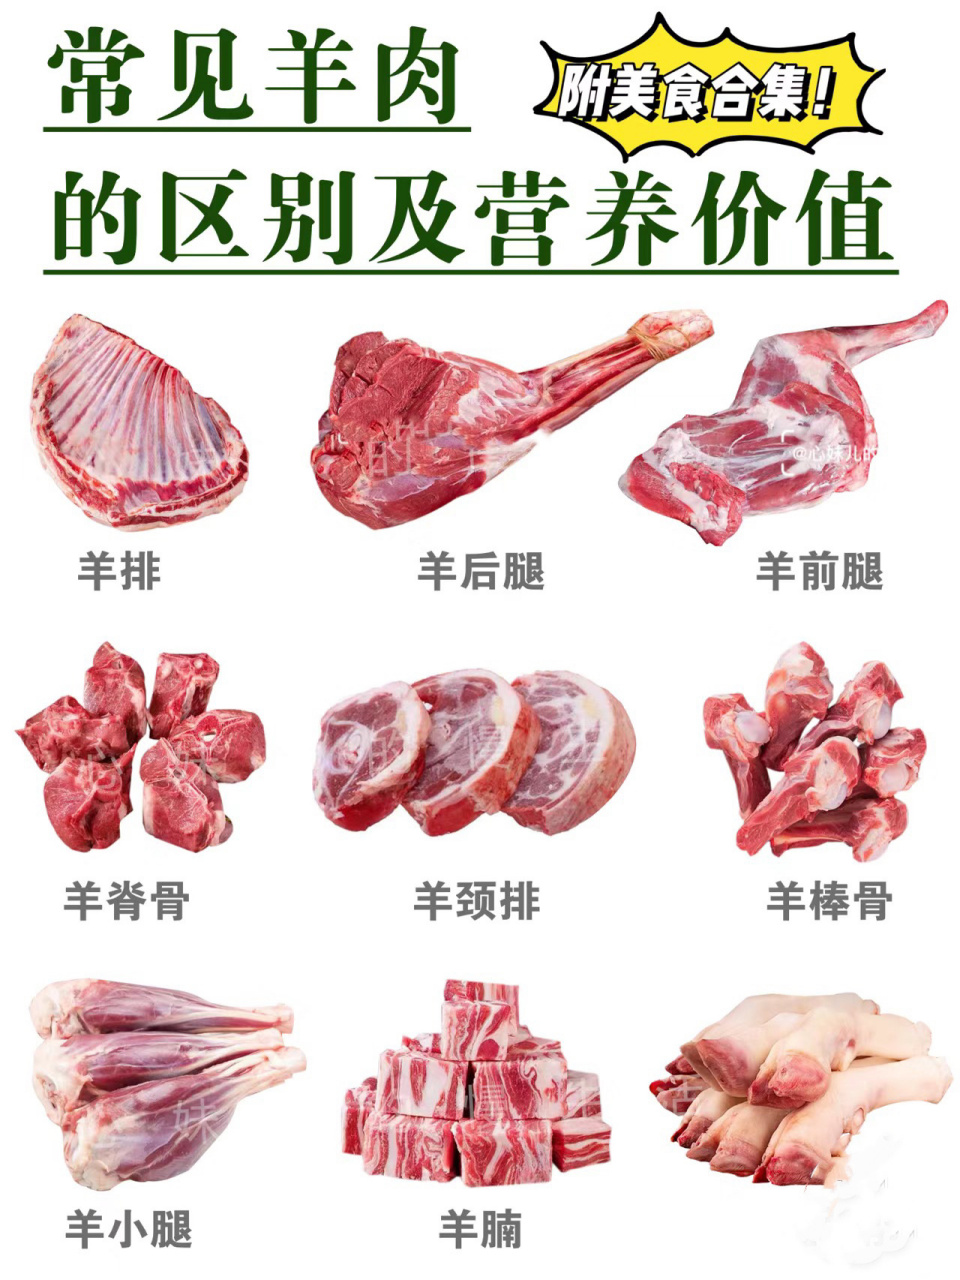 【羊肉说明书】常见各部位区别营养价值及做法 图26615~图666